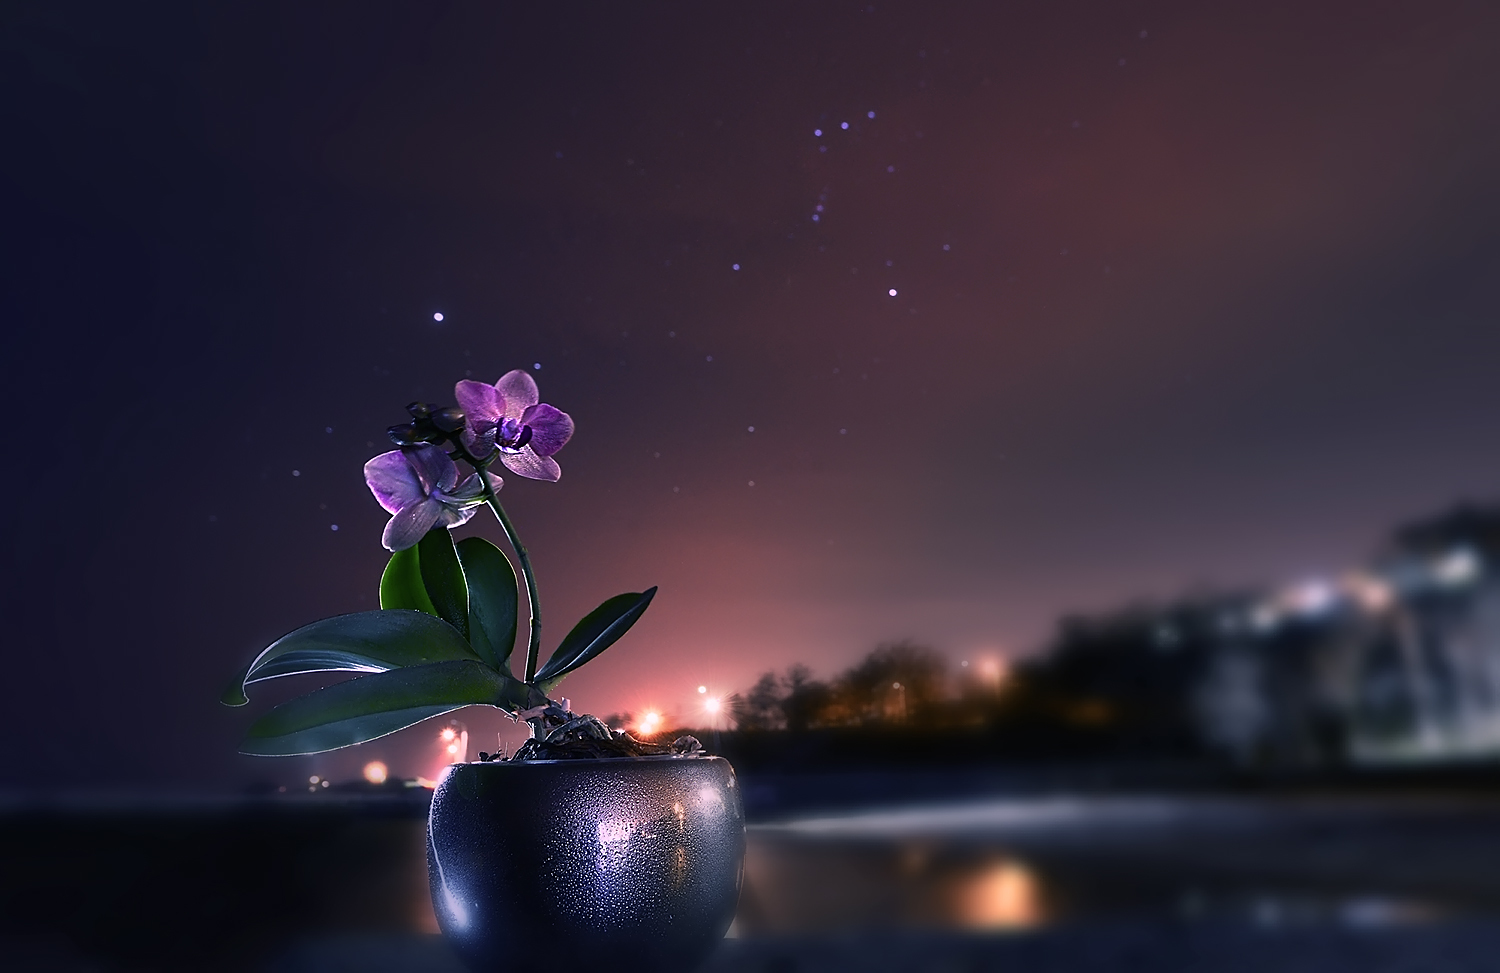 Картинка красивая с добрым вечером нежная. Ночной цветок. Вечерние цветы. Цветы ночью. Красивые ночные цветы.